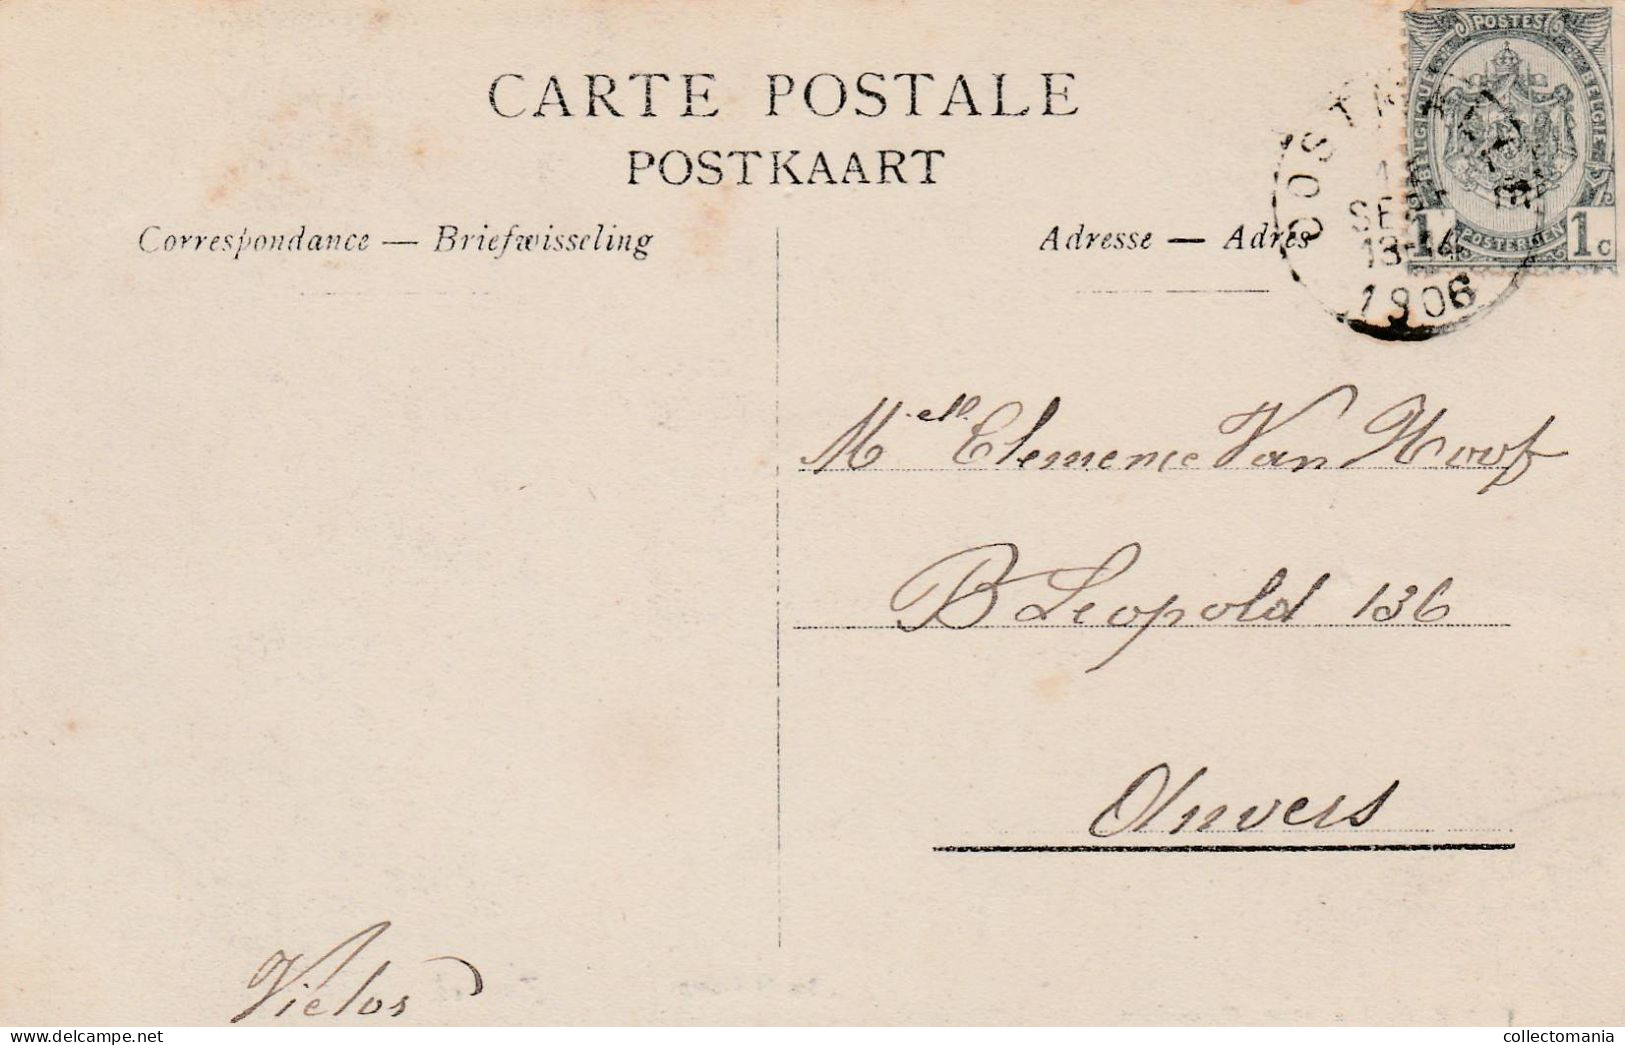 1 Oude Postkaart ZOERSEL  Stoomtram   Zicht In 't Dorp  1903  Uitg.Hoelen - Zoersel